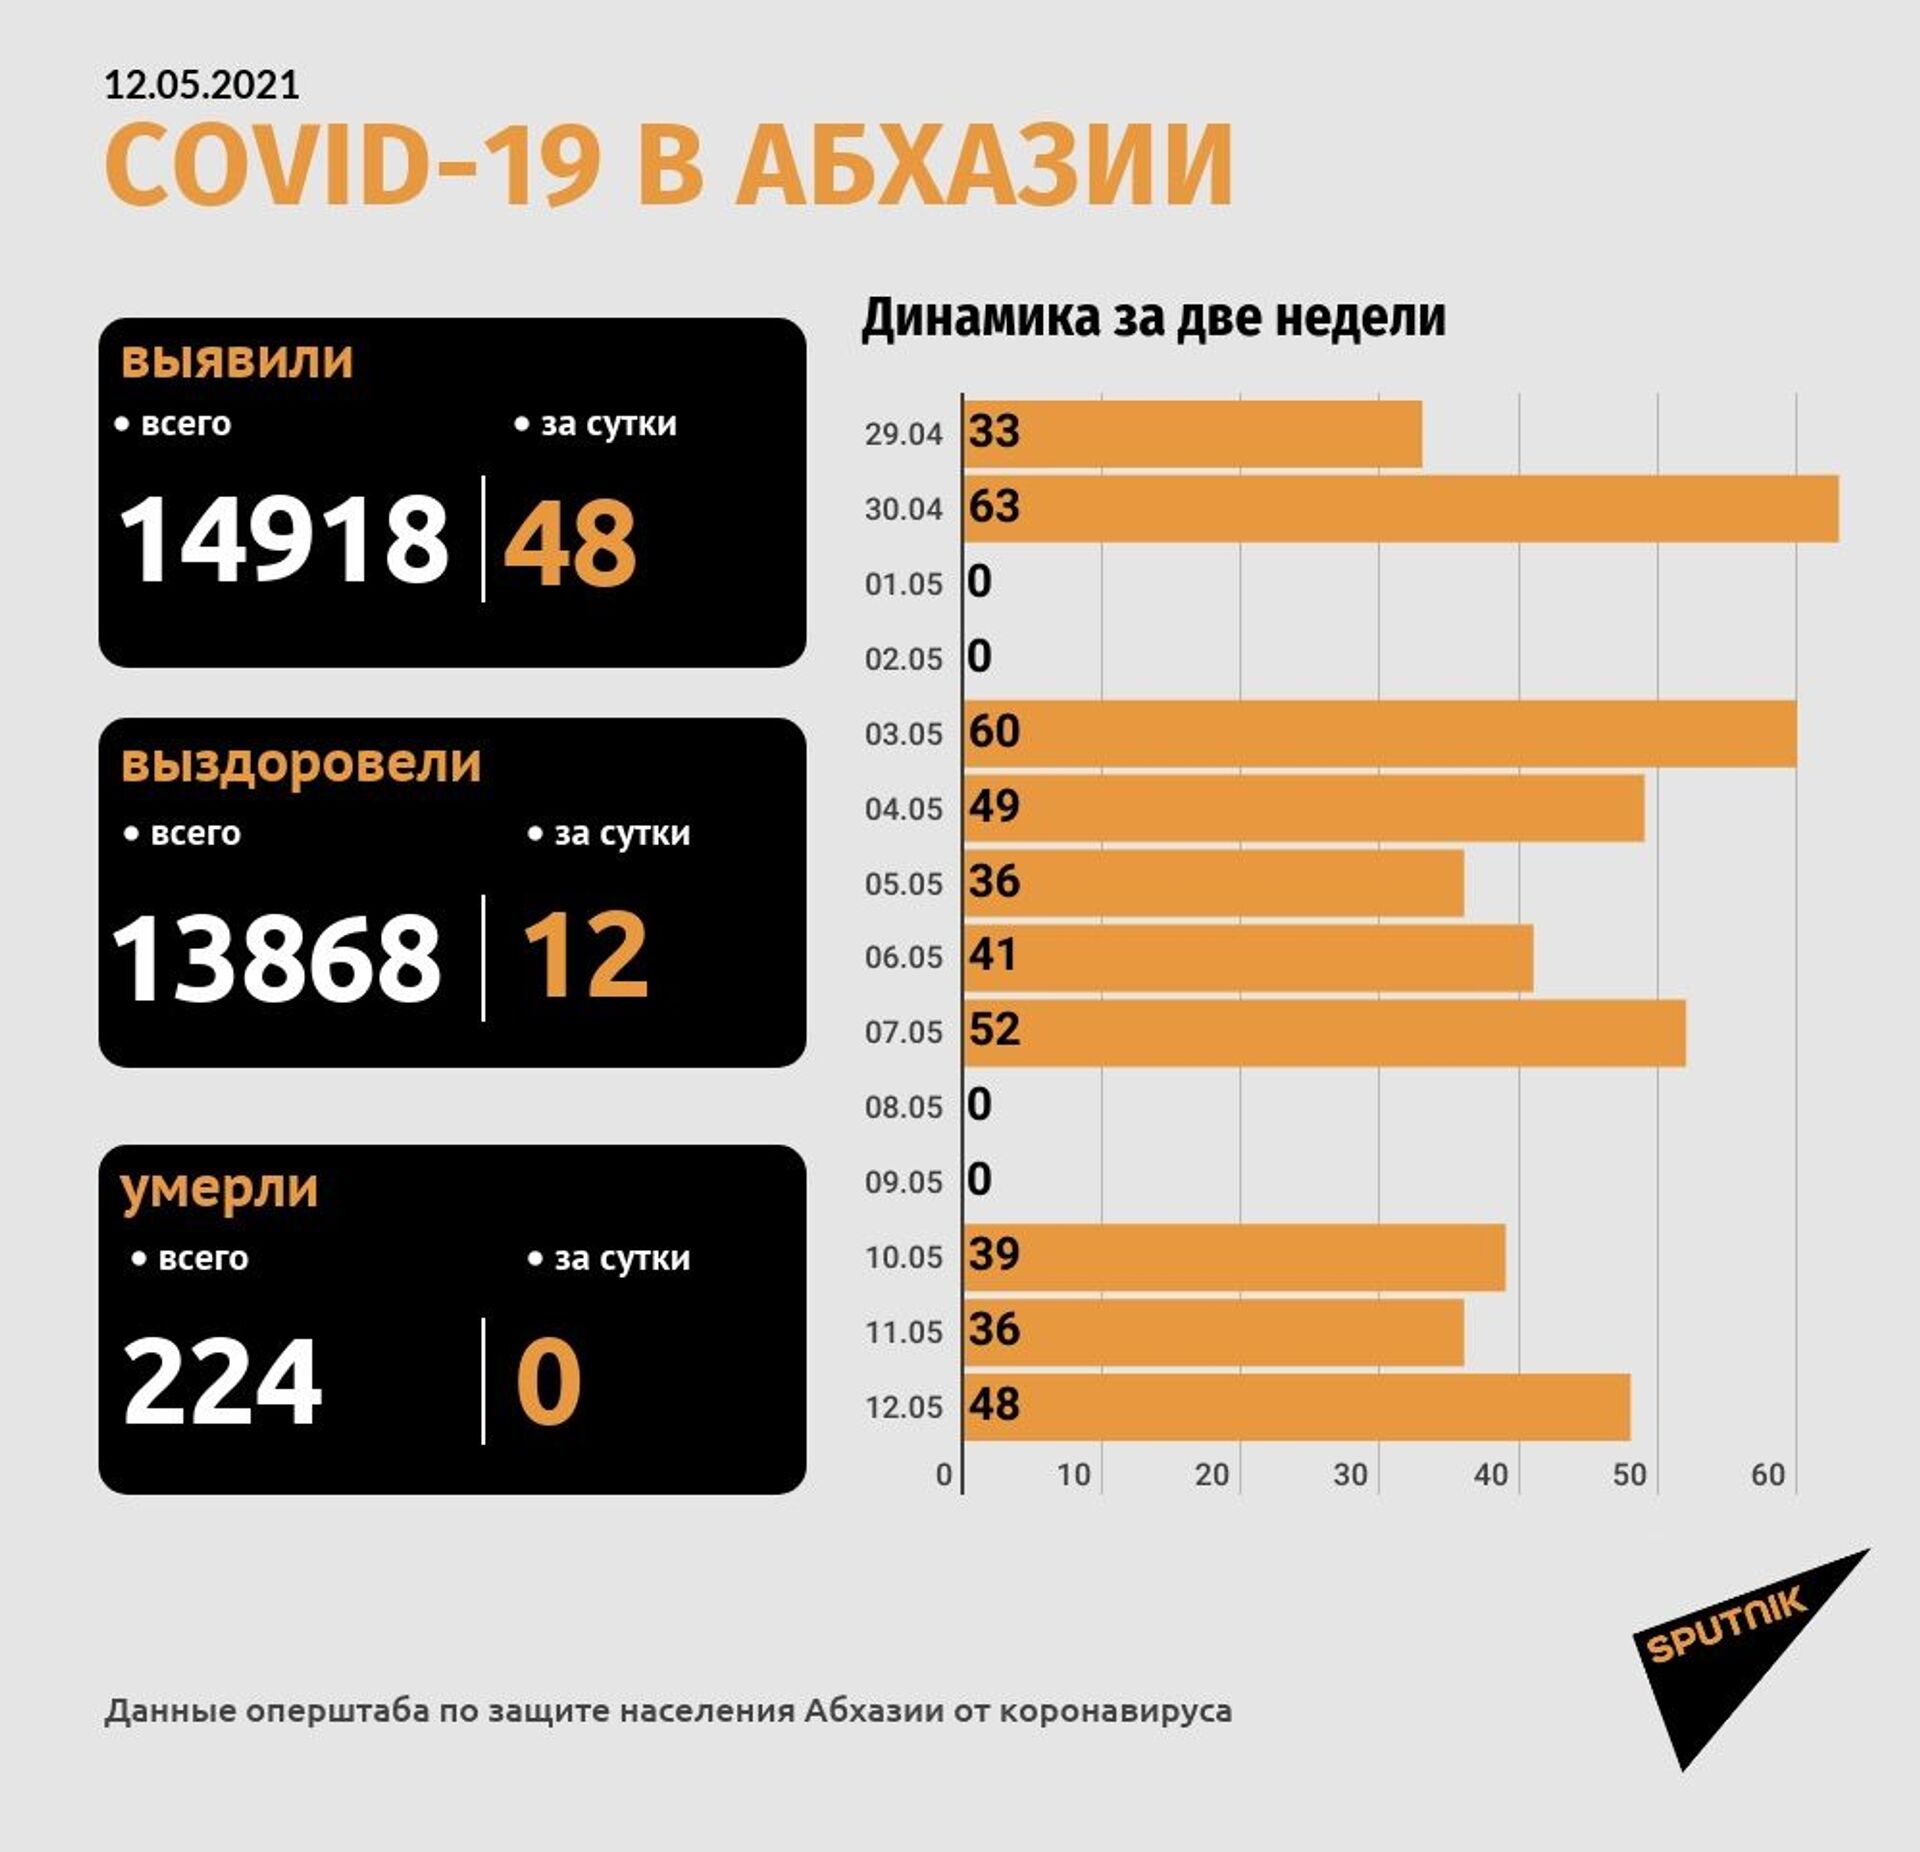 Коронавирус диагностирован еще у 48 жителей Абхазии за прошедшие сутки - Sputnik Абхазия, 1920, 12.05.2021